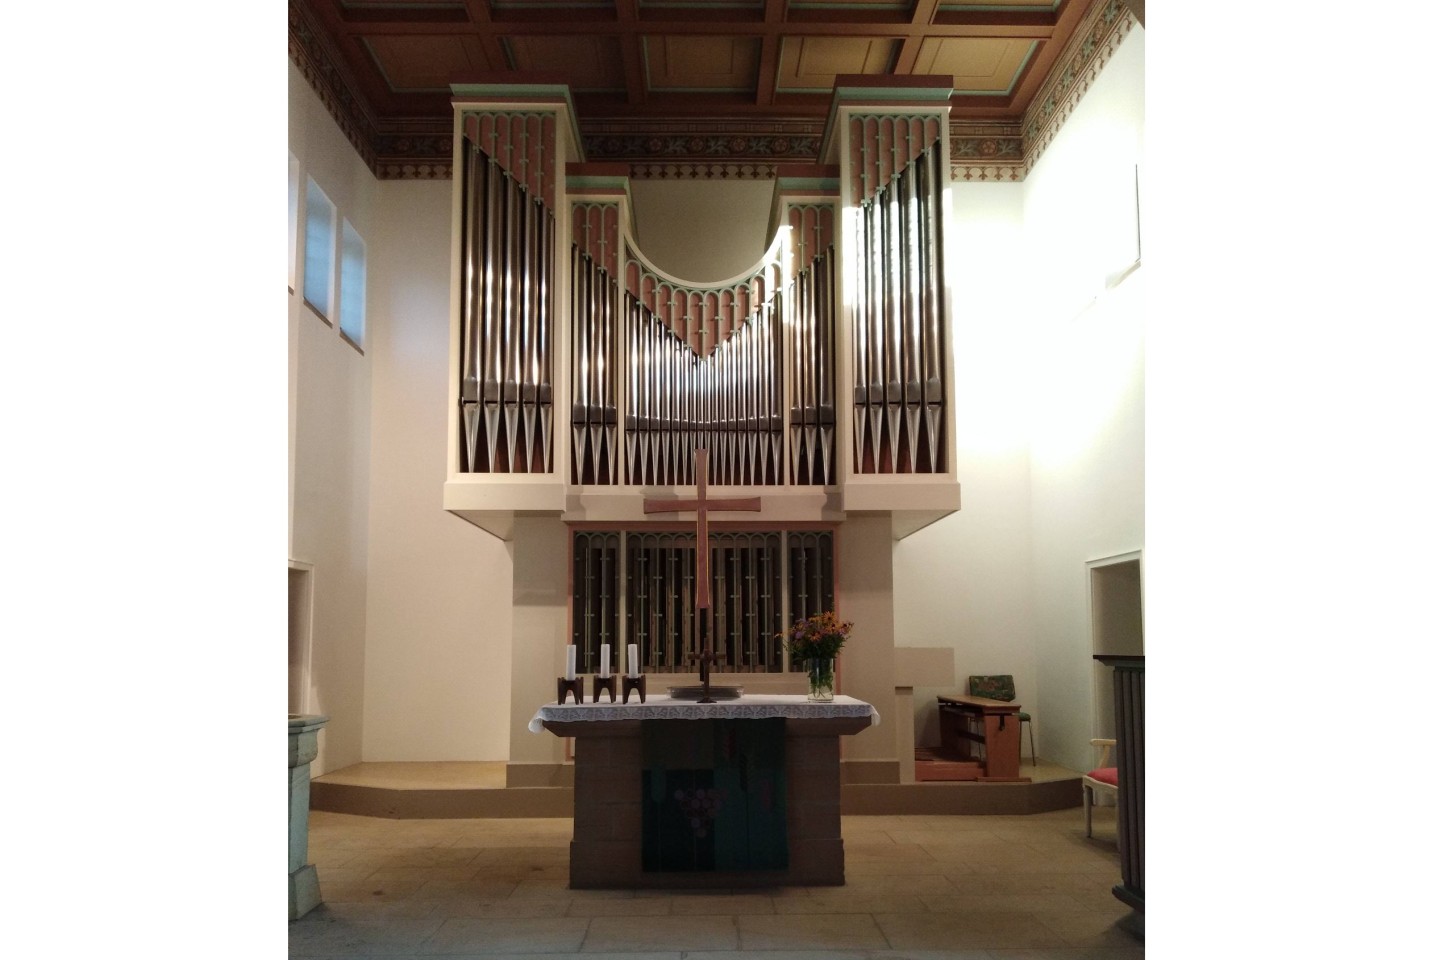 Veranstaltung der Musikgesellschaft Bad Driburg: Musik zur Nachmittagszeit - Orgel Ev. Kirche Bad Driburg